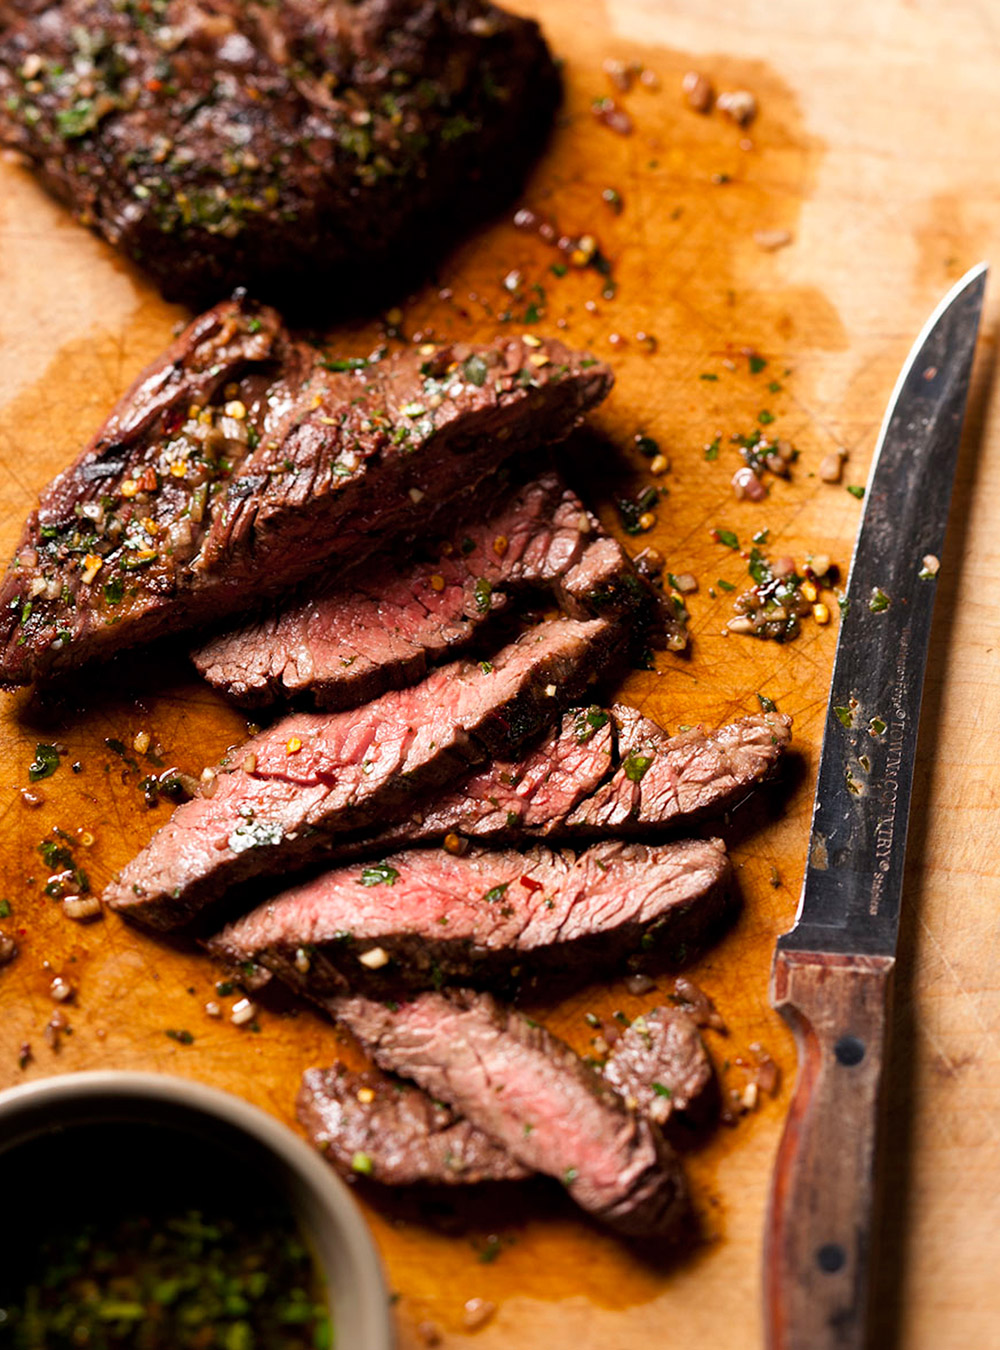 Recette de boeuf: tout sur les rôtis ou les steaks de boeuf  page ...